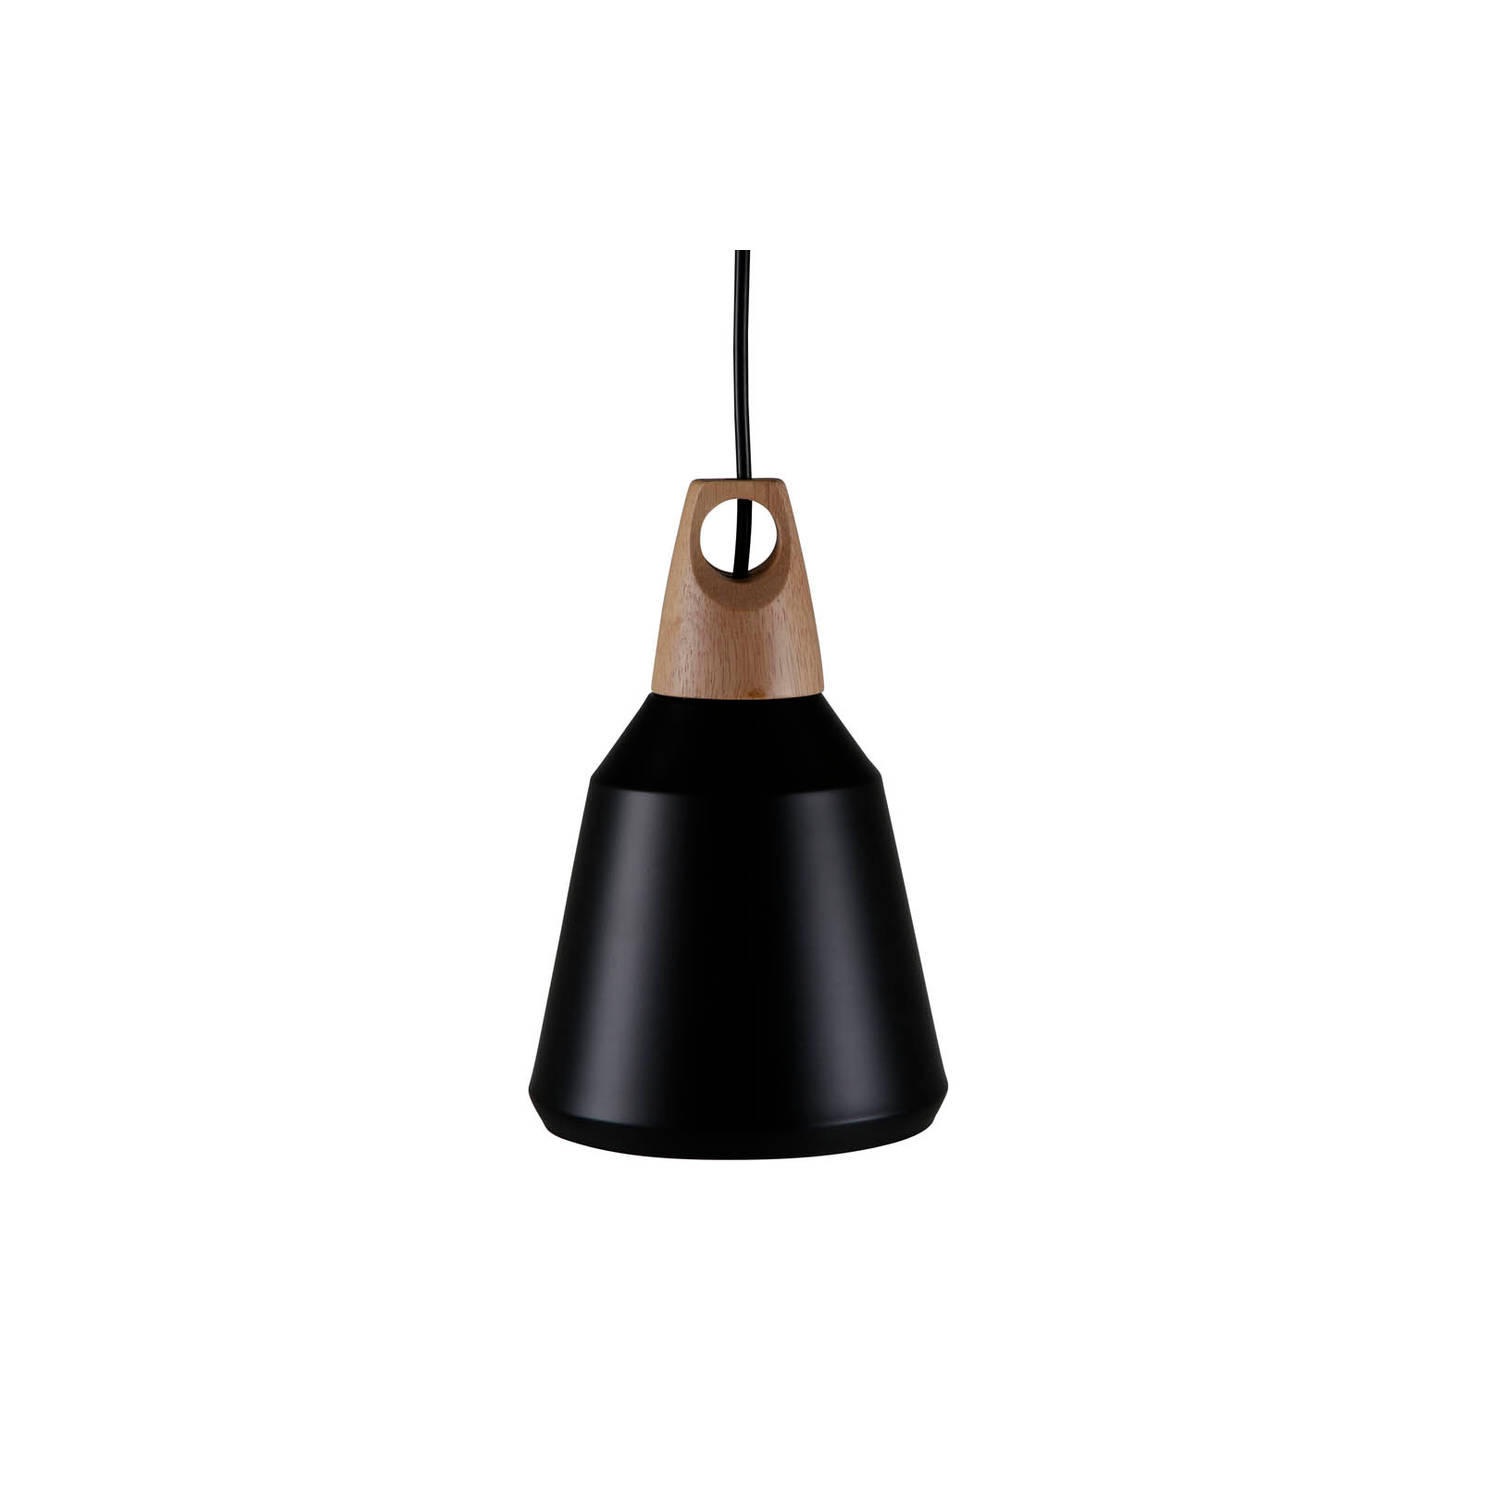 Hioshop Nao verlichting hanglamp Ã16cm aluminum zwart, hout.